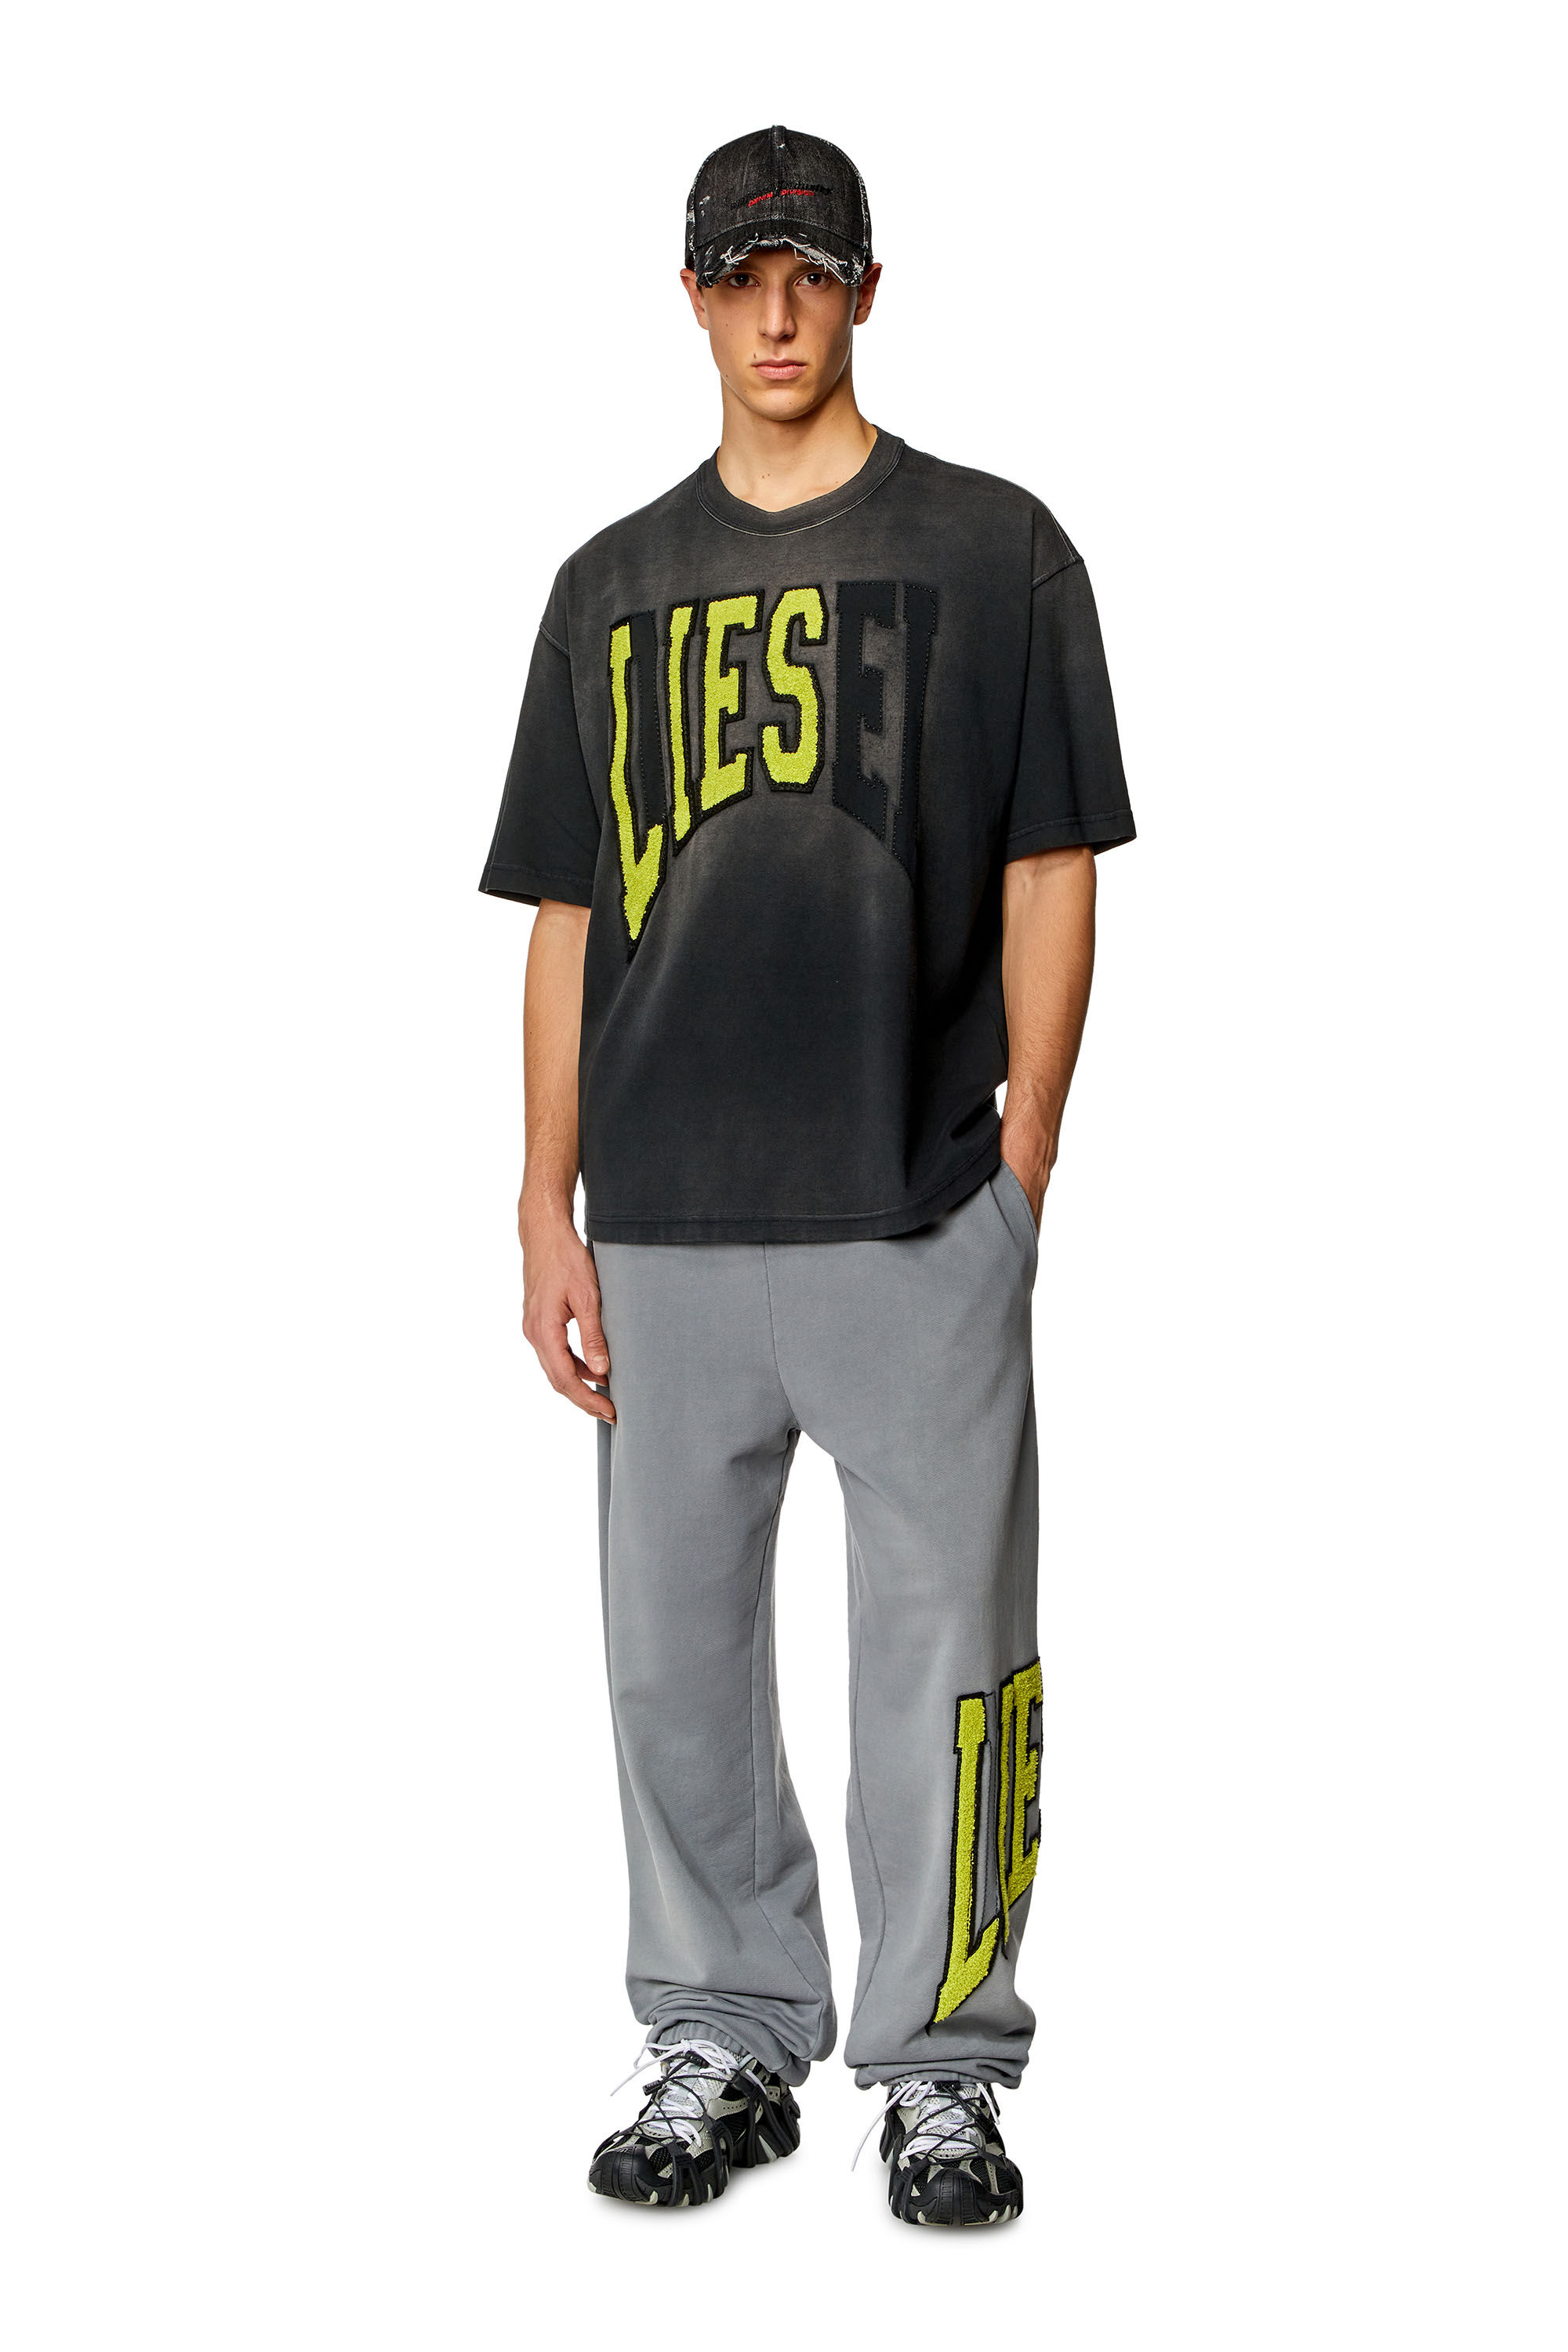 Diesel - T-WASH-N, Uomo T-shirt over con logo Diesel Lies in Nero - Image 1